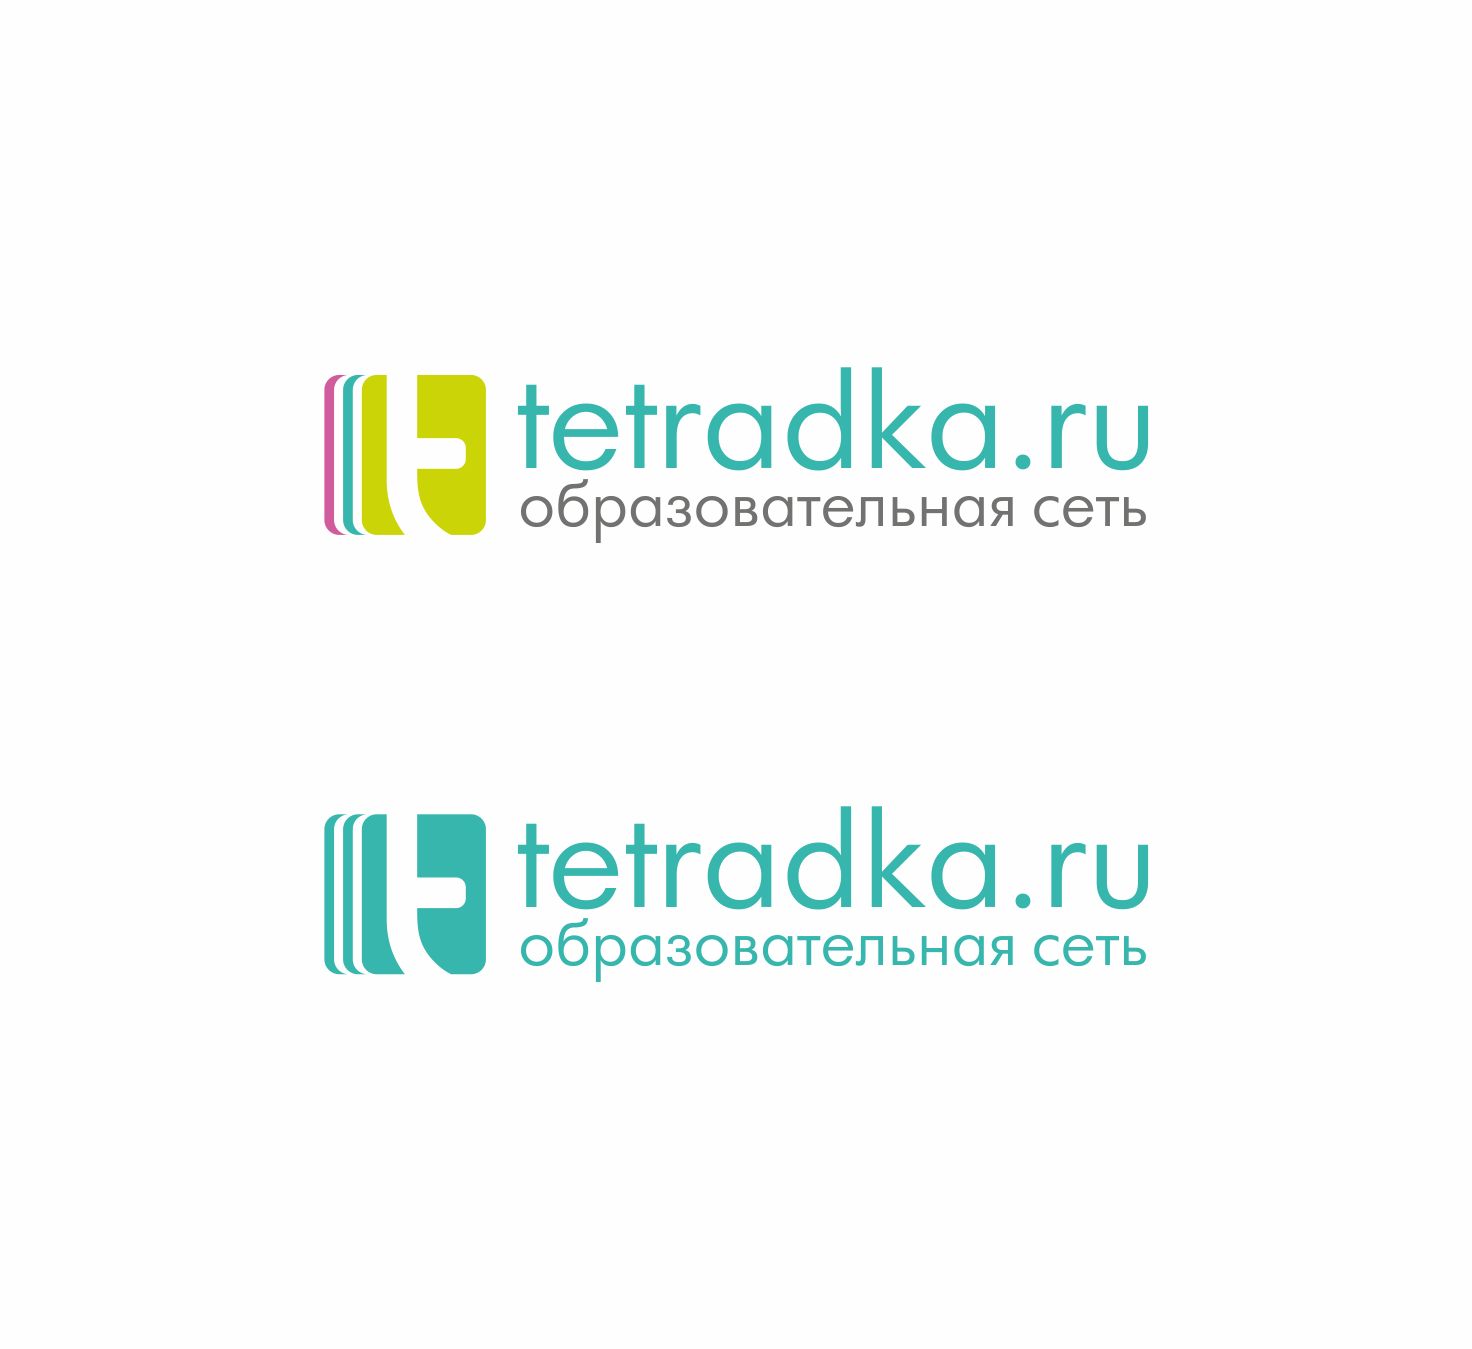 Логотип для образовательной сети tetradka.ru - дизайнер LianaVeret